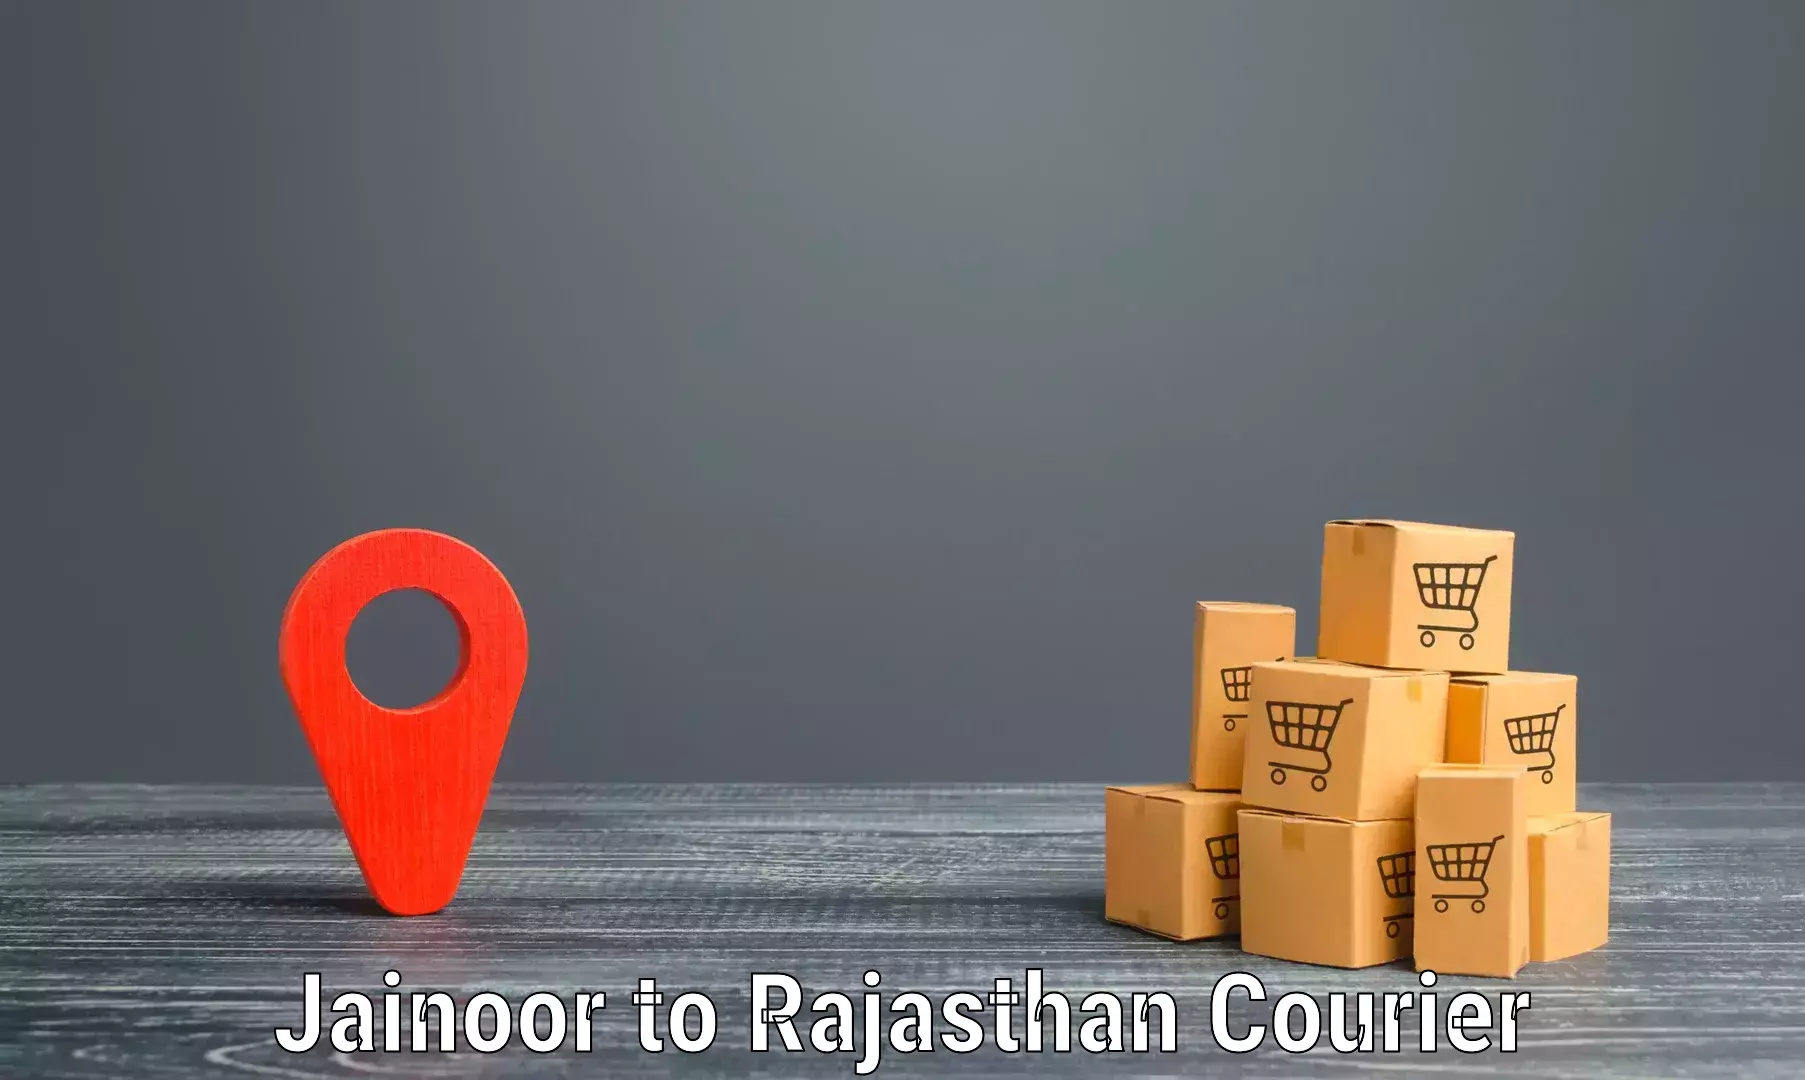 Modern delivery technologies Jainoor to Sikar